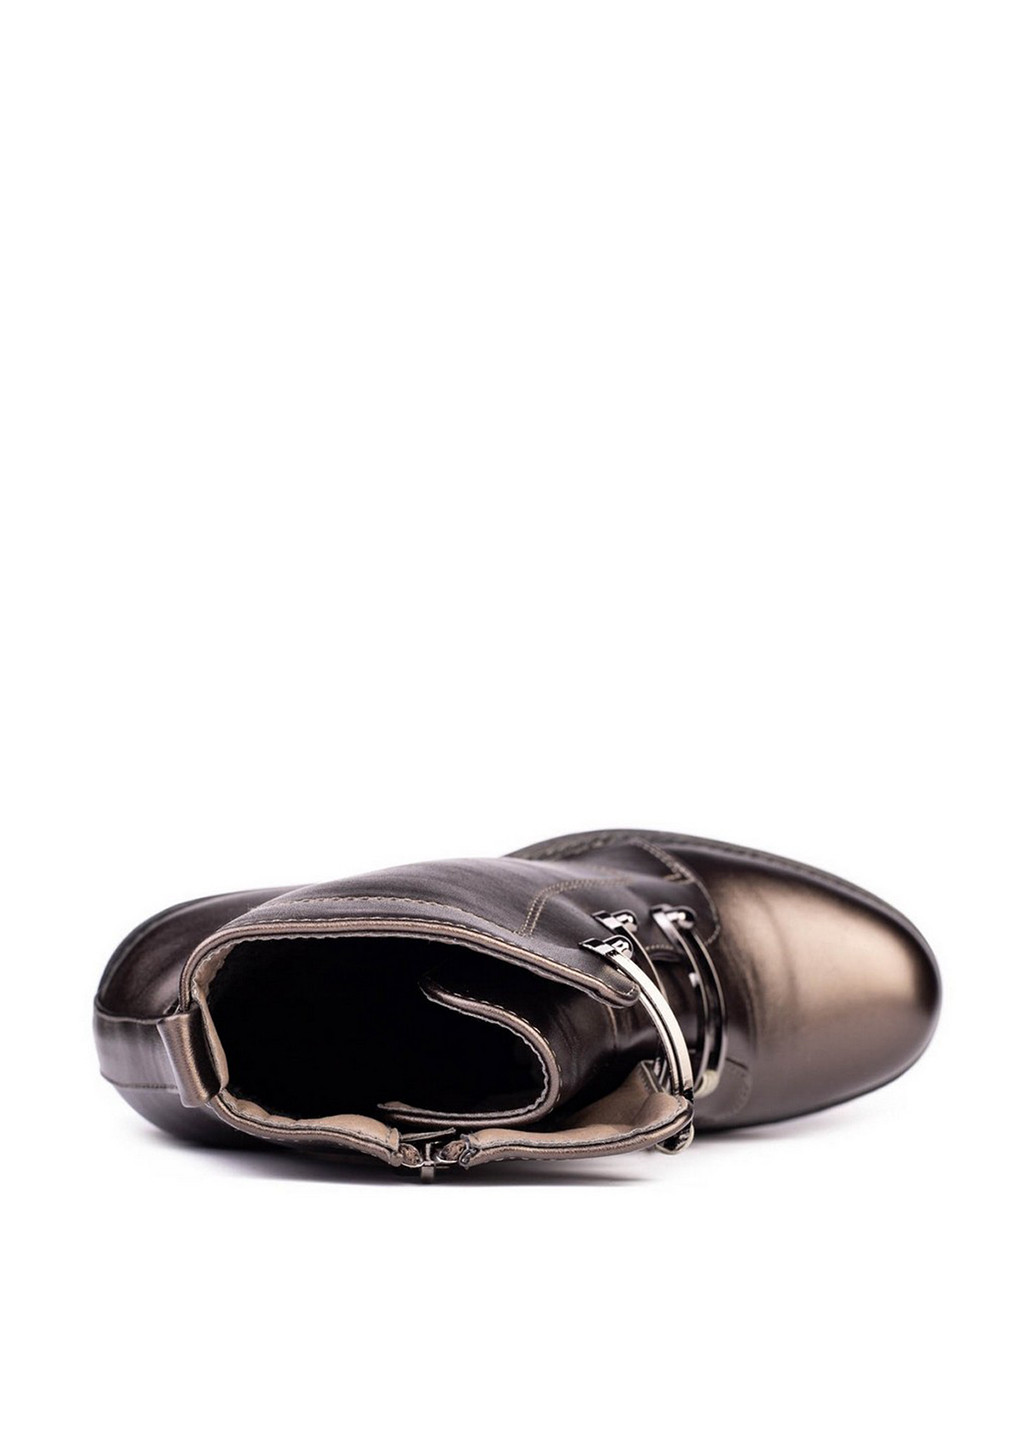 Осенние ботинки Stilli с заклепками из искусственной кожи